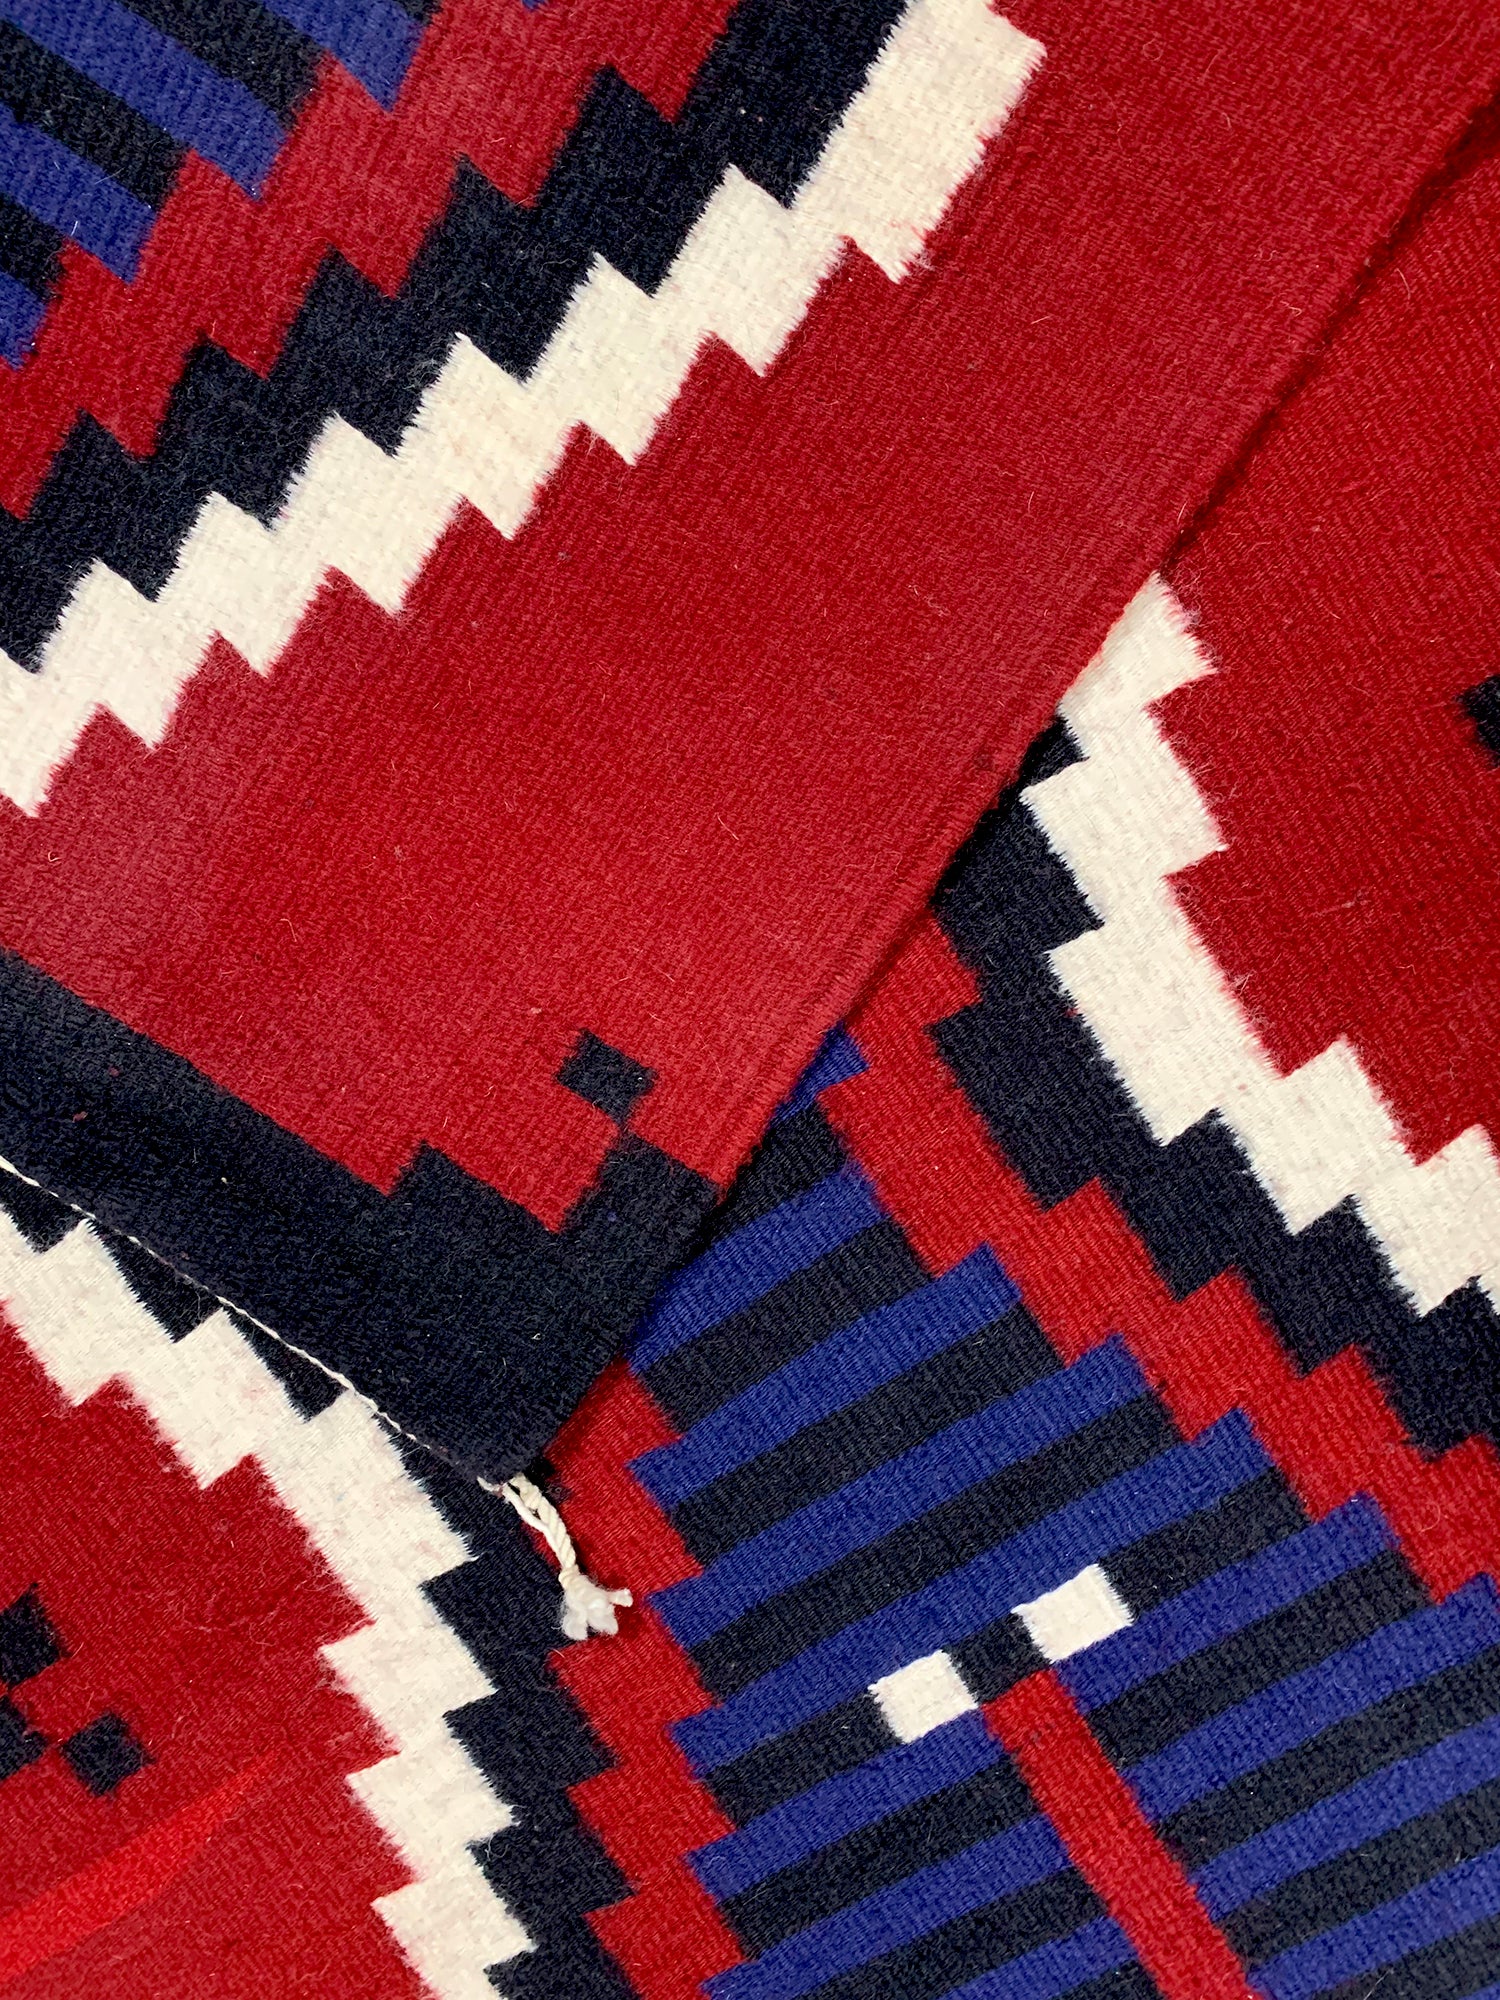 Navajo Rug - Moki Blanket Revival